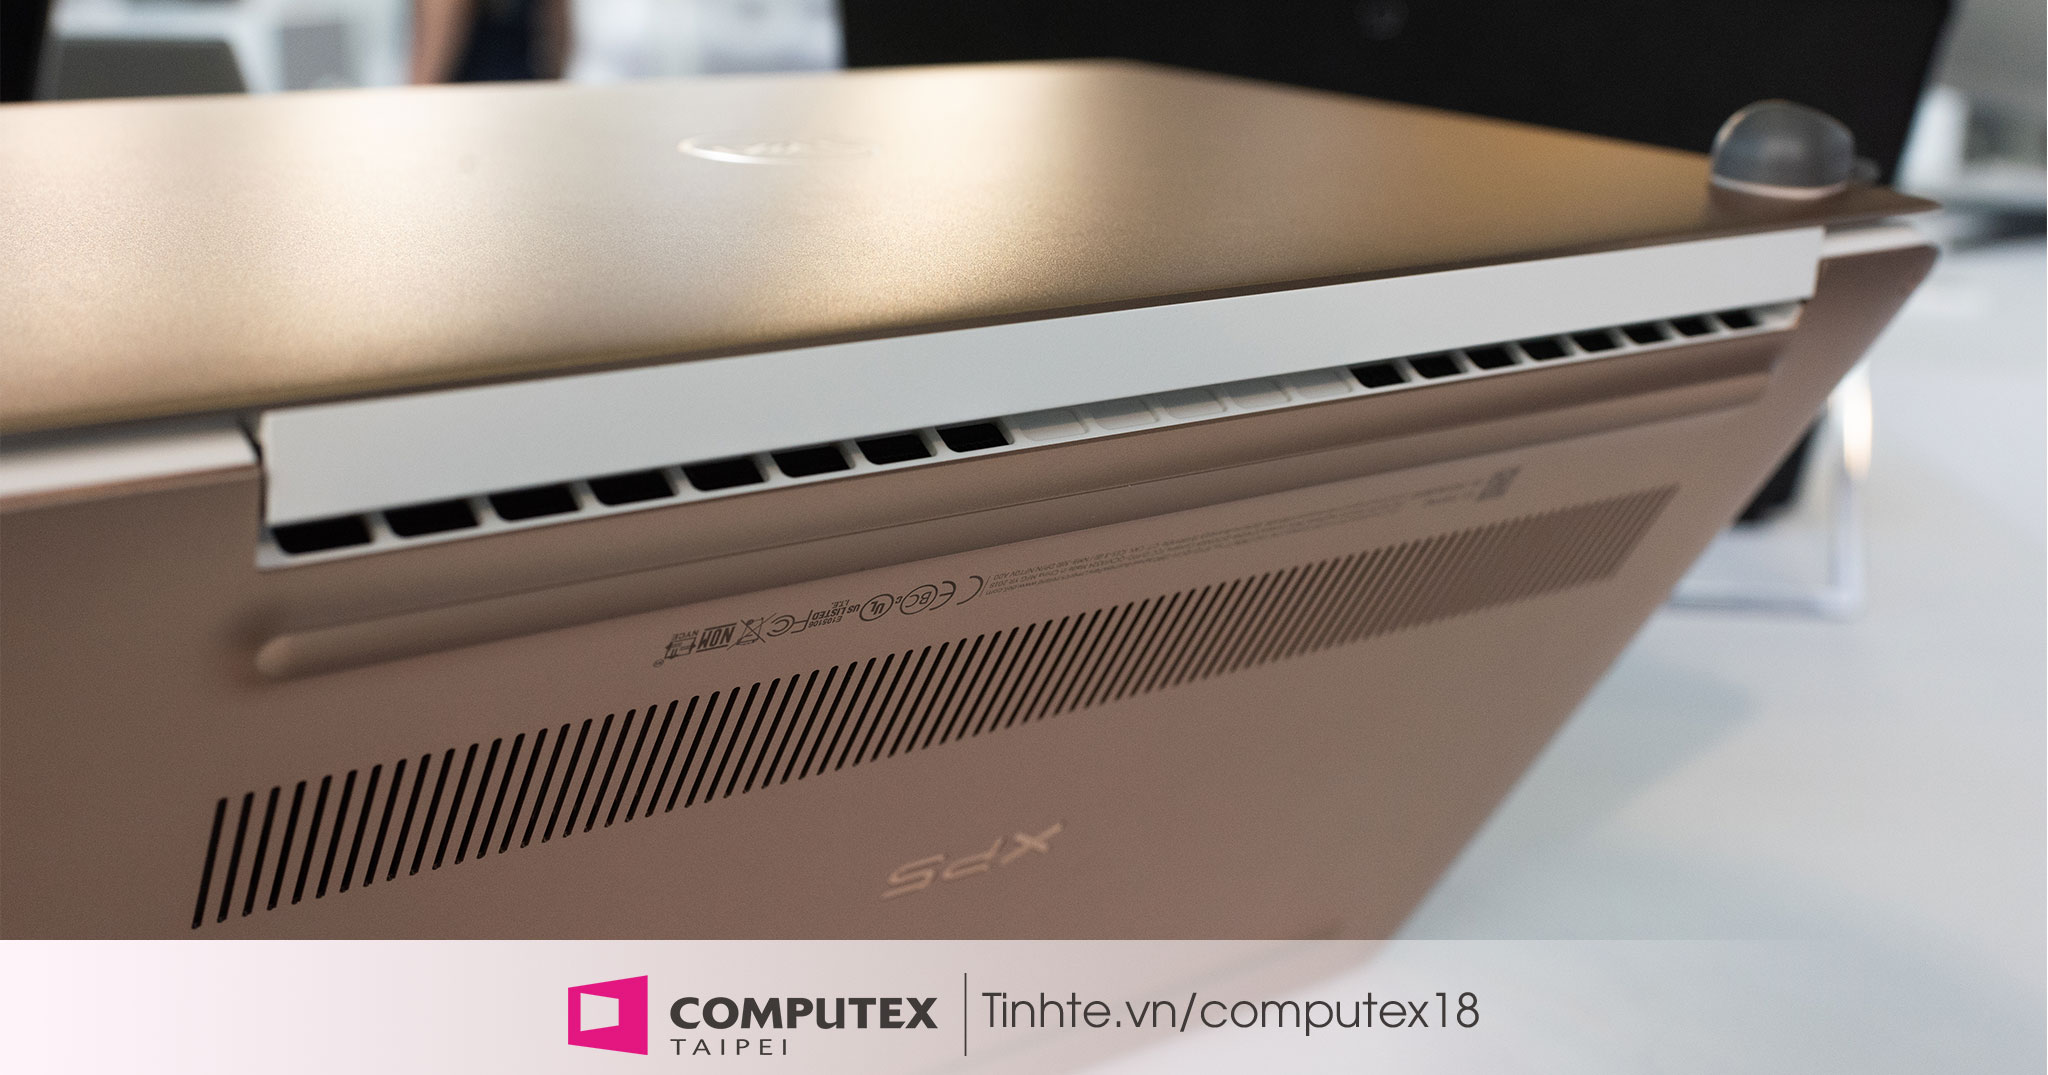 Trên tay Dell XPS 13 9370 Rose Gold - Thiết kế tinh tế, đạt giải Computex d&i 2018